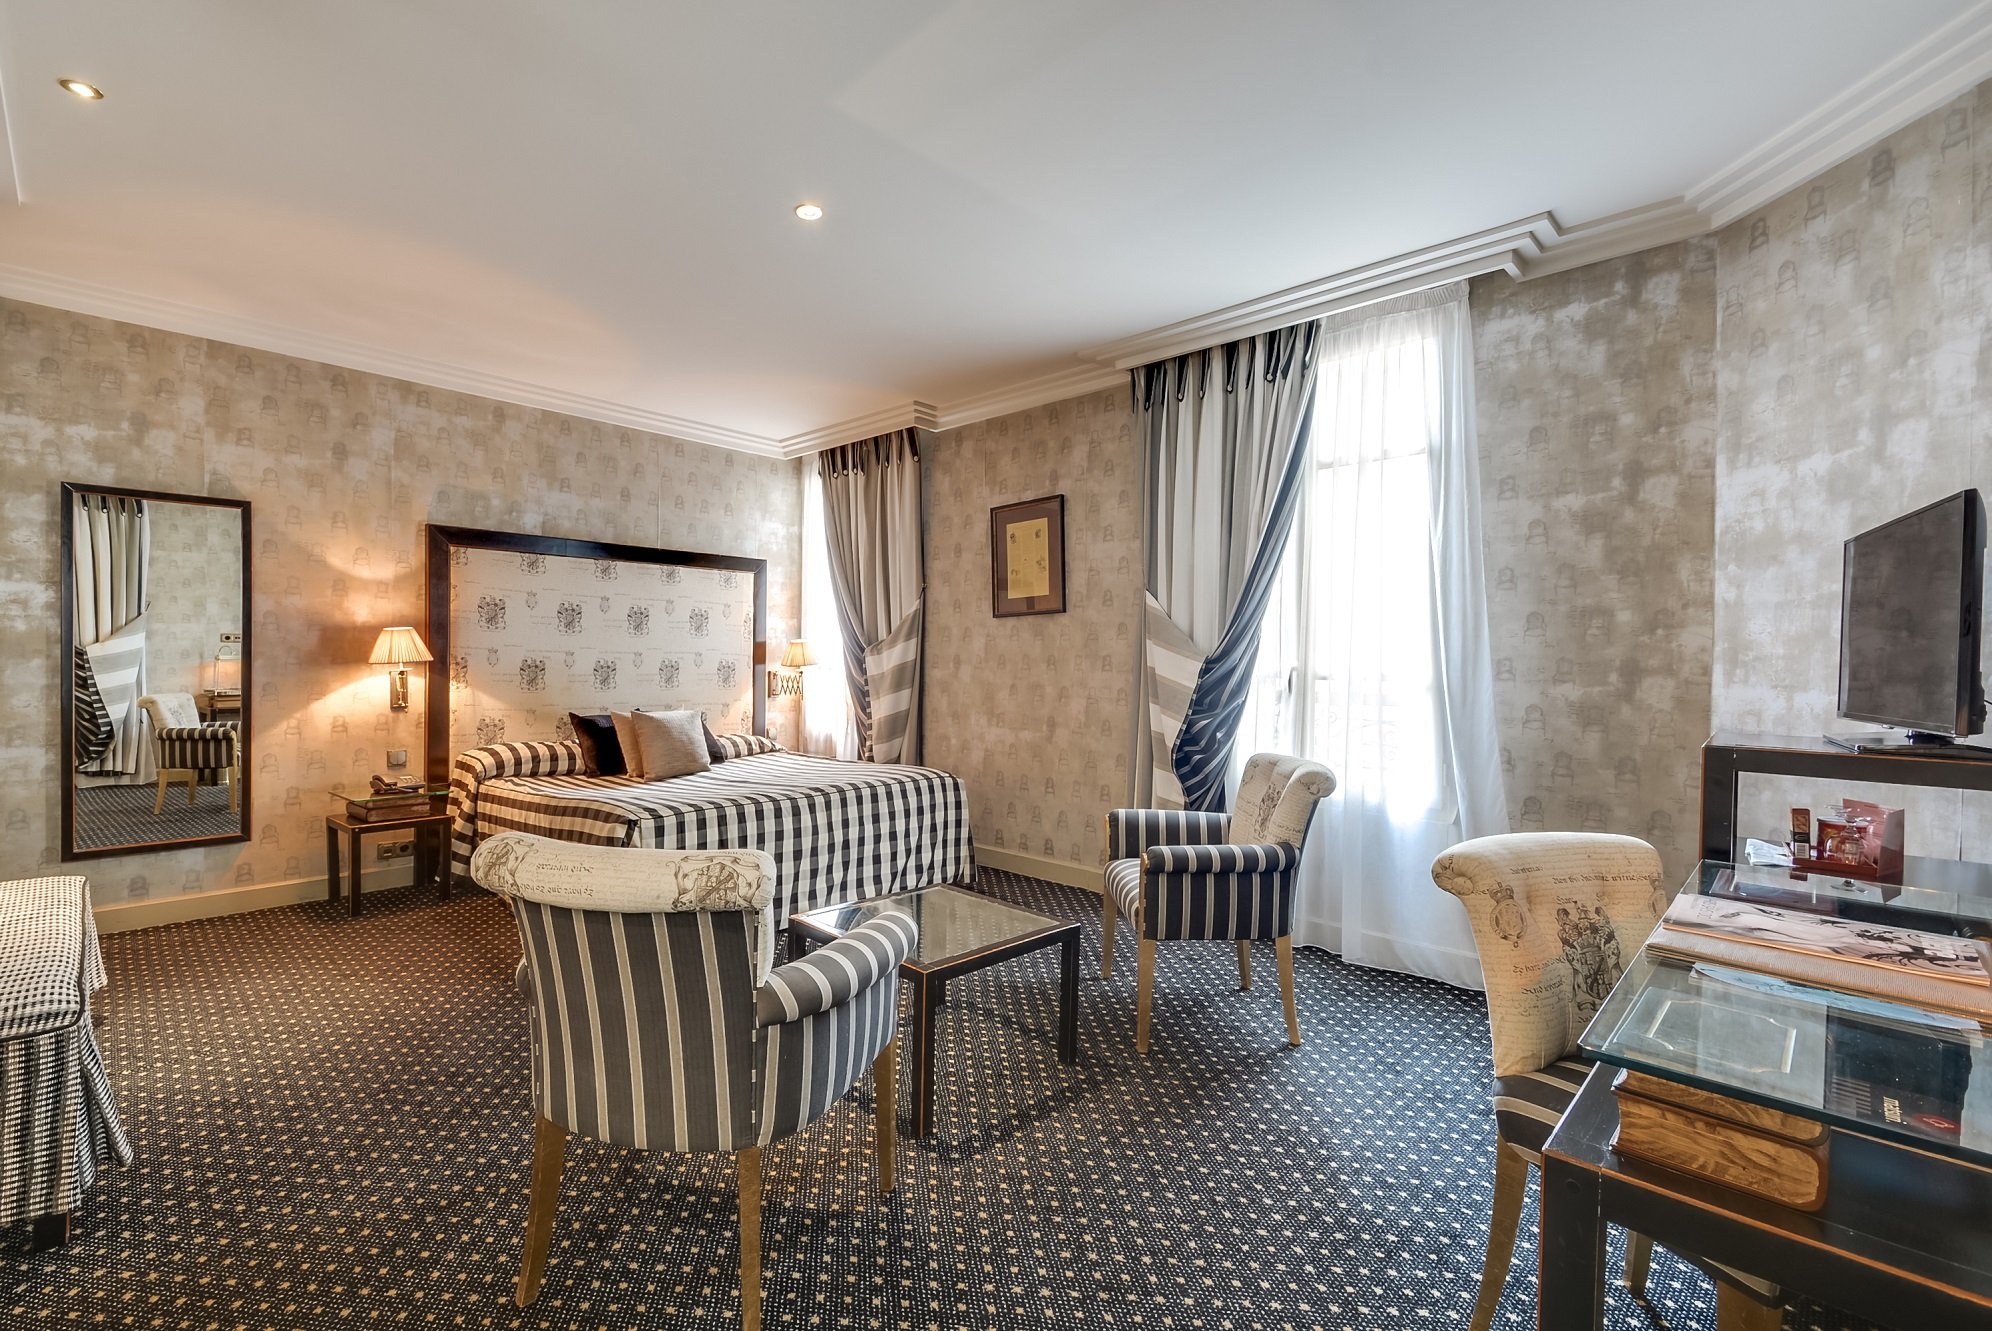 50/Chambres/JUNIOR SUITE/Suite - 4 star hotel - Paris.jpg